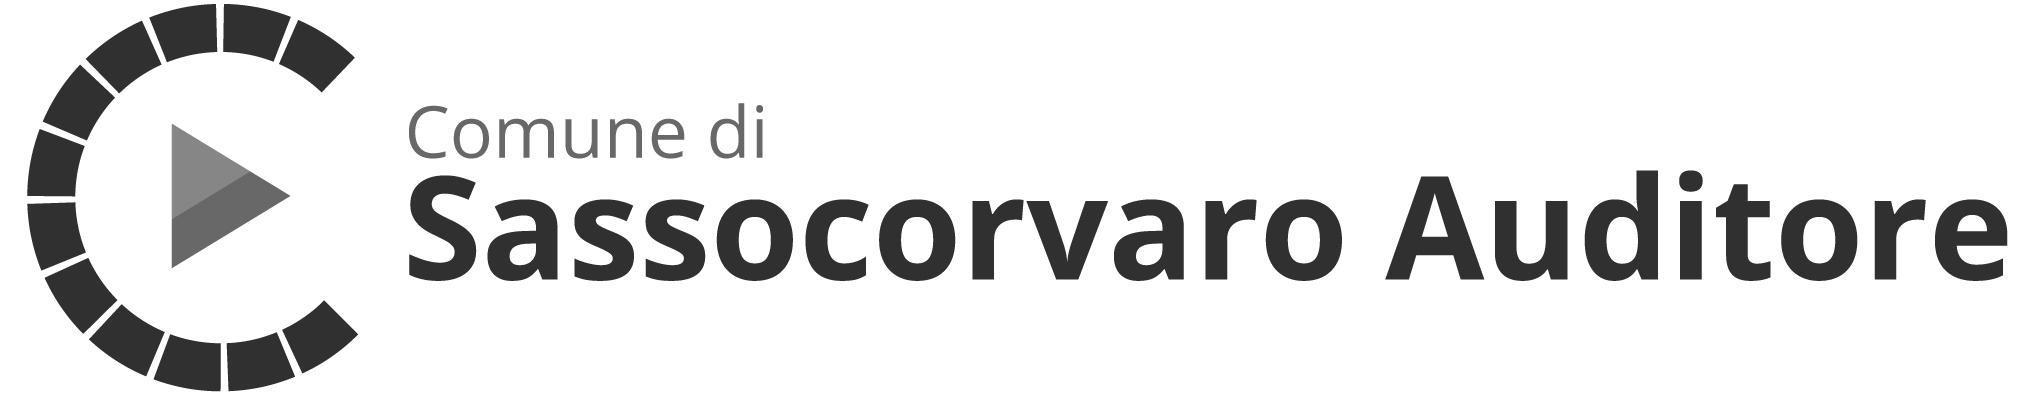 nome-comune-logo-civicam-Sassocorvaro-Auditore